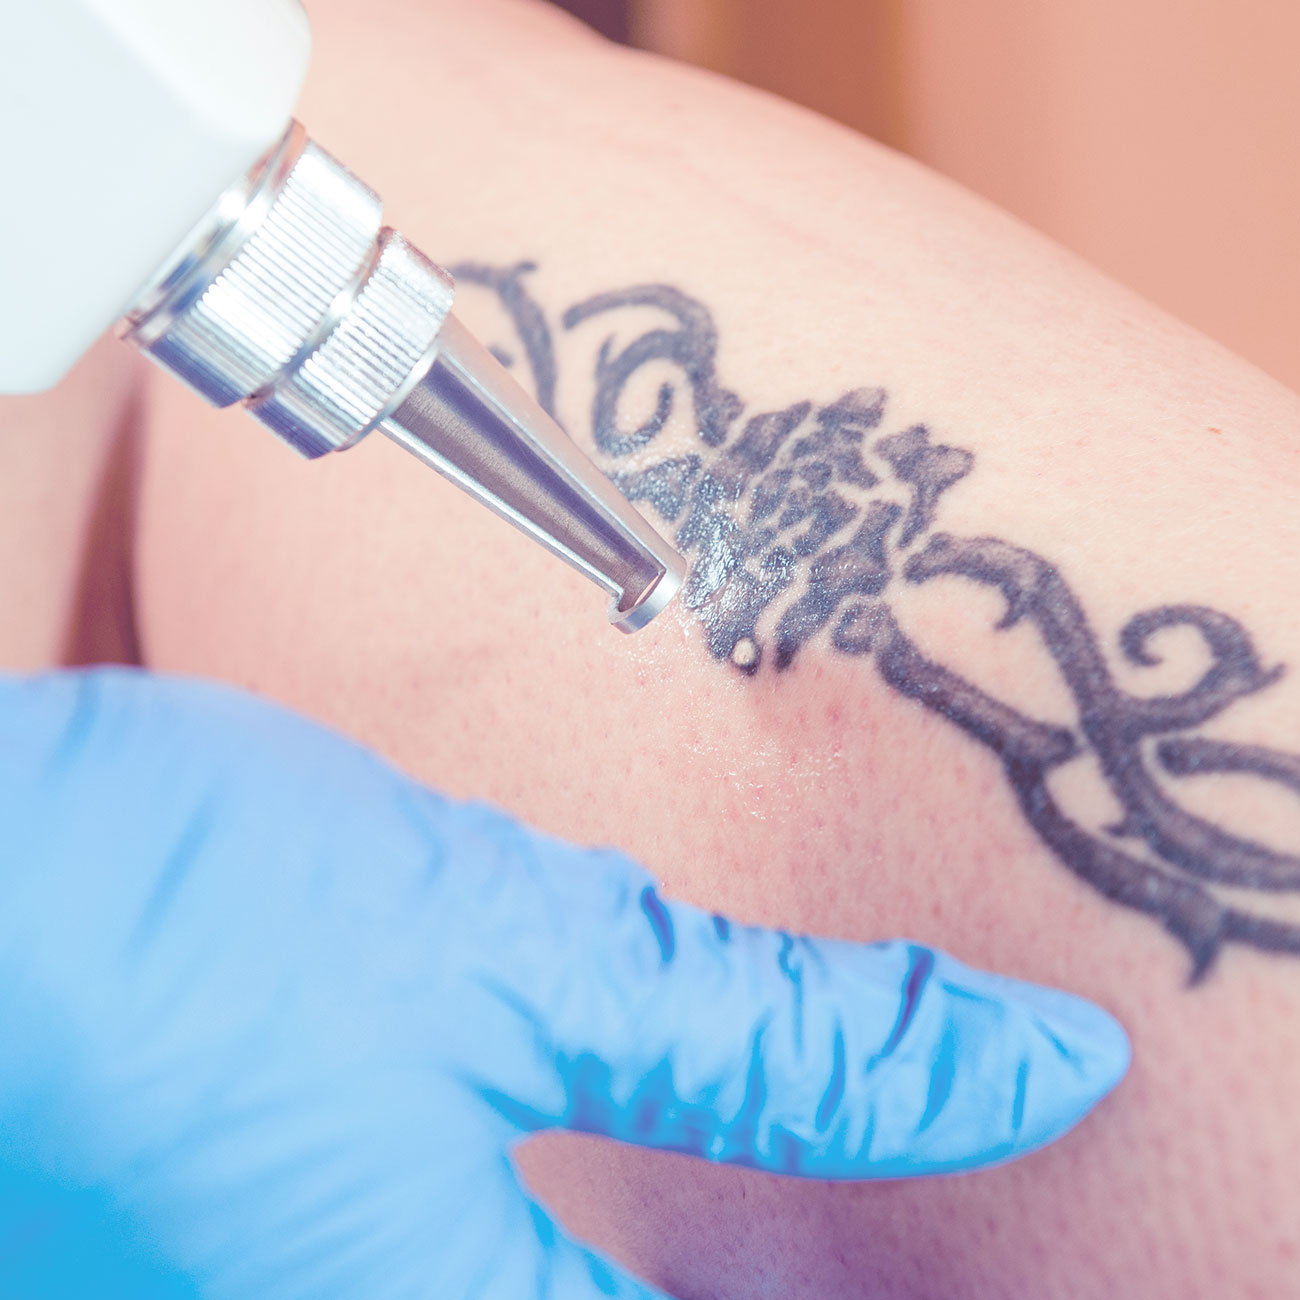 Eliminación de tatuajes con láser en Madrid - Clínica Menorca